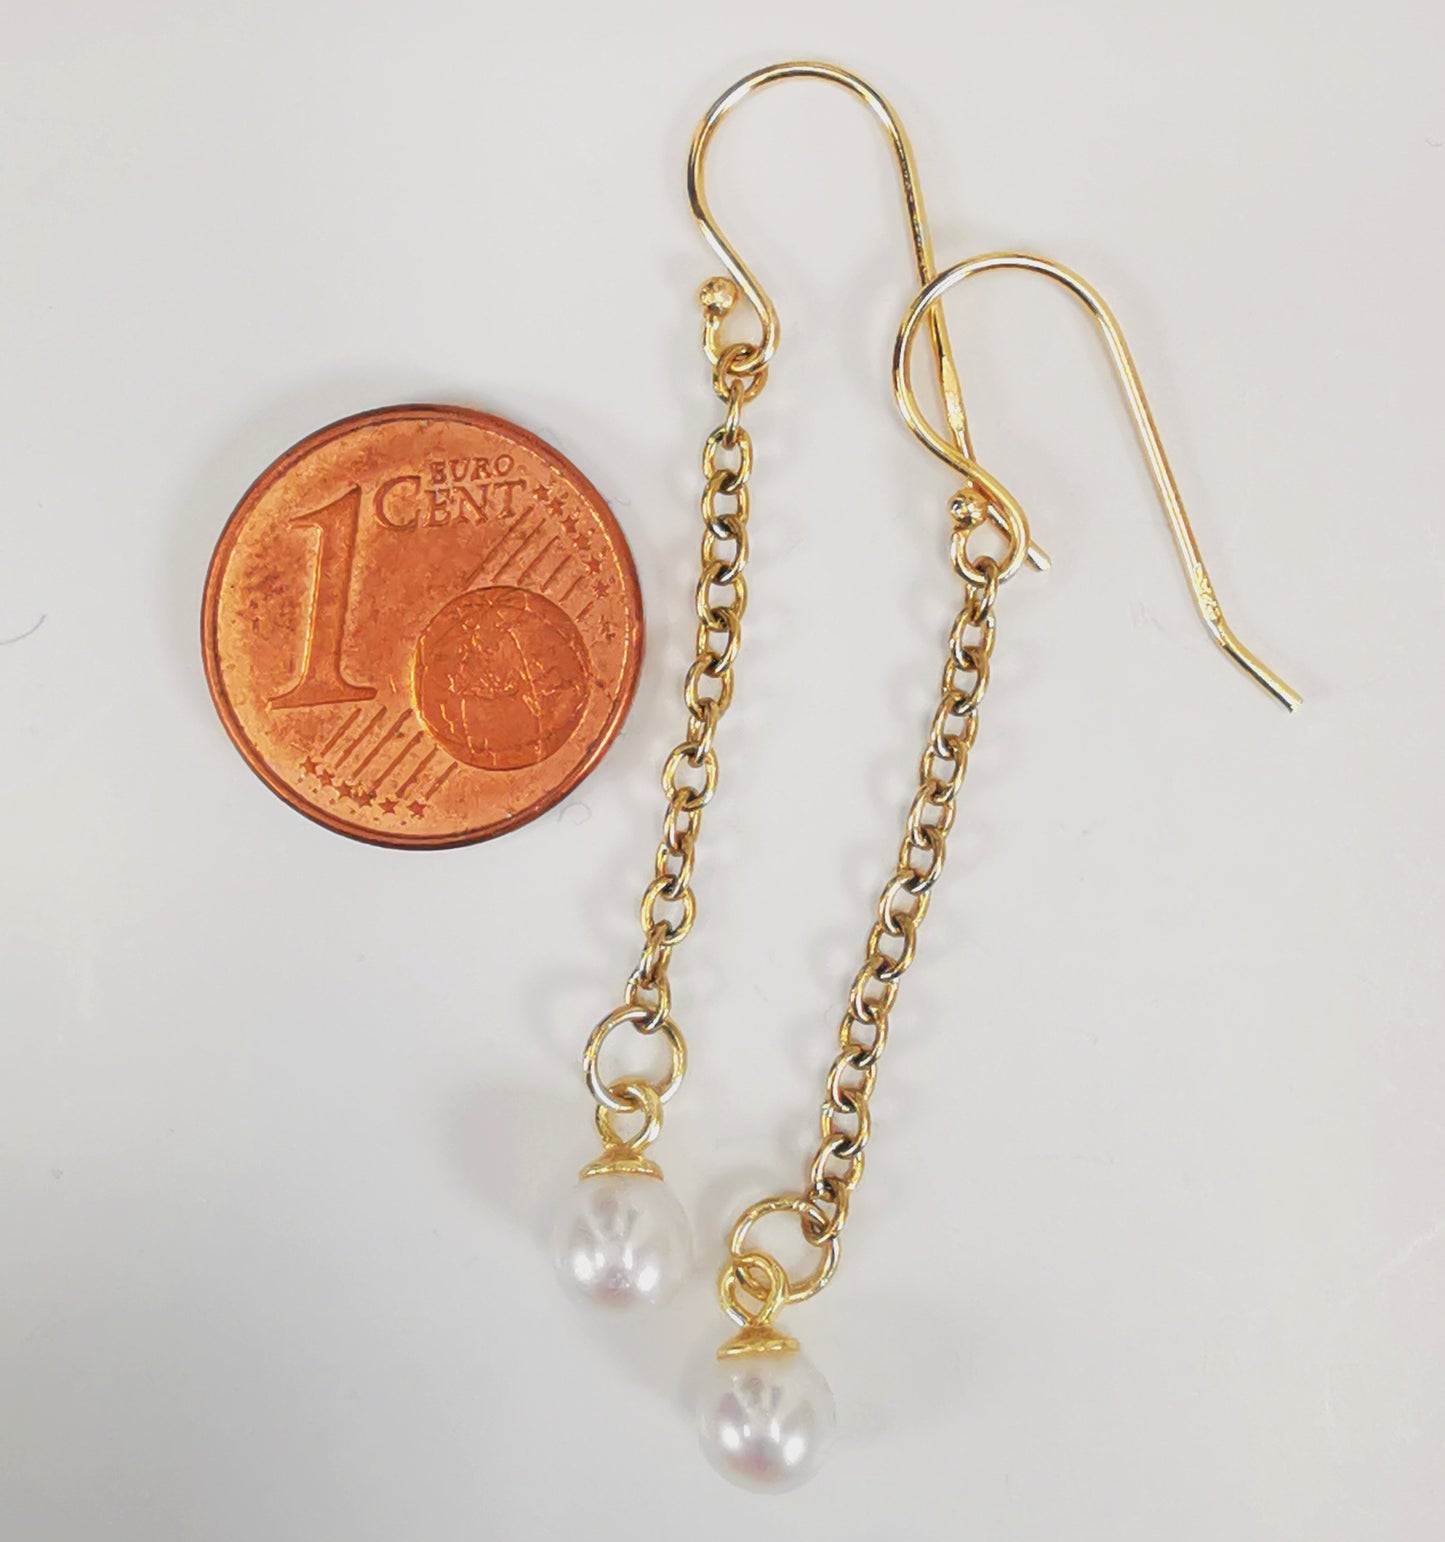 Boucles d'oreilles perles de culture blanches rondes 5mm sur pendants et chaînes plaqués or. Présentées cote à cote, boucle de gauche décalée vers le haut, à droite d'une pièce de 1 centime, sur fond blanc. Vue de dessus.